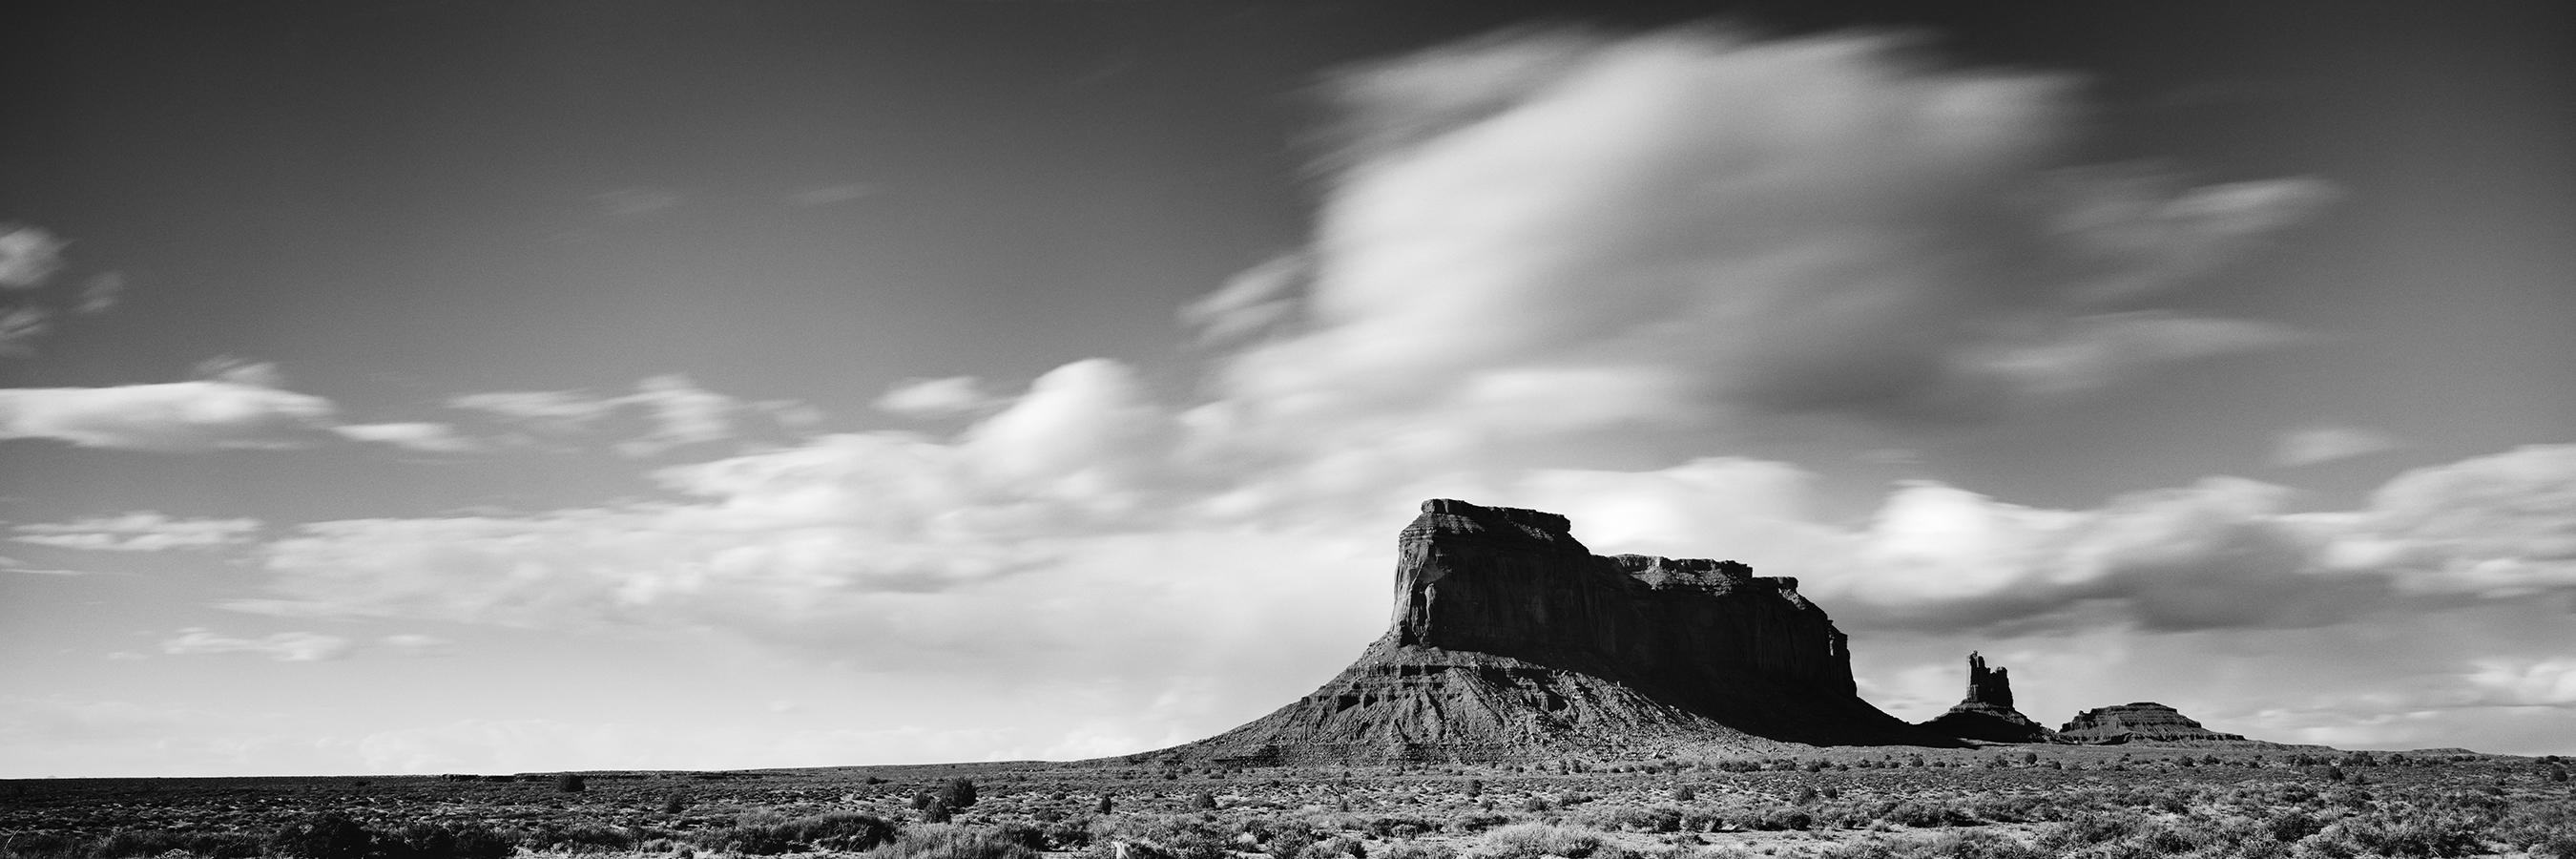 Wild West Panorama Utah Schwarz-Weiß-Fotografie death valley bildende Kunstlandschaft